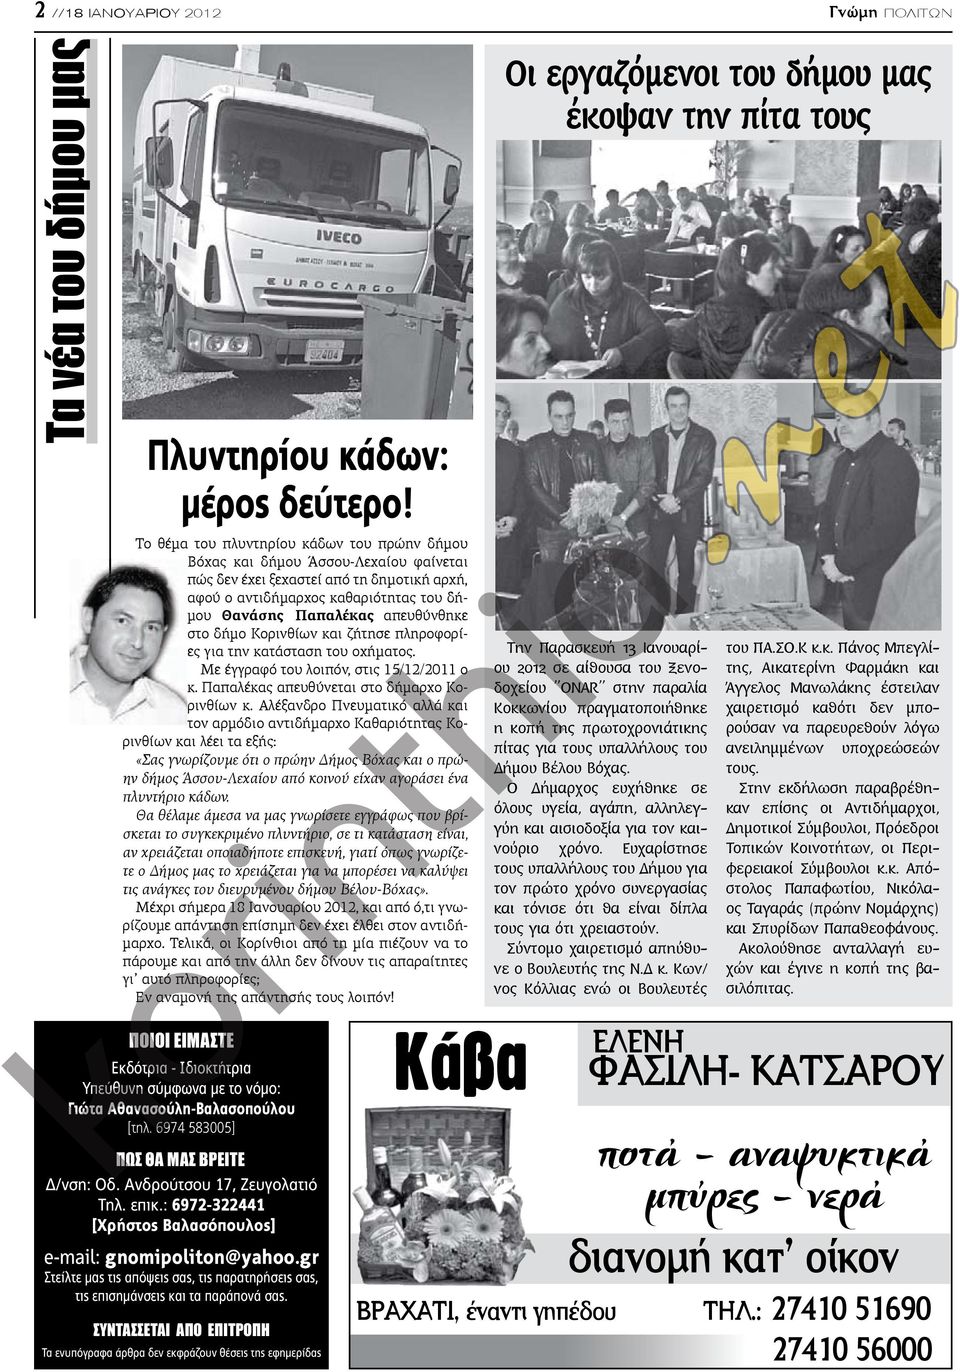 απευθύνθηκε στο δήμο Κορινθίων και ζήτησε πληροφορίες για την κατάσταση του οχήματος. Με έγγραφό του λοιπόν, στις 15/12/2011 ο κ. Παπαλέκας απευθύνεται στο δήμαρχο Κορινθίων κ.